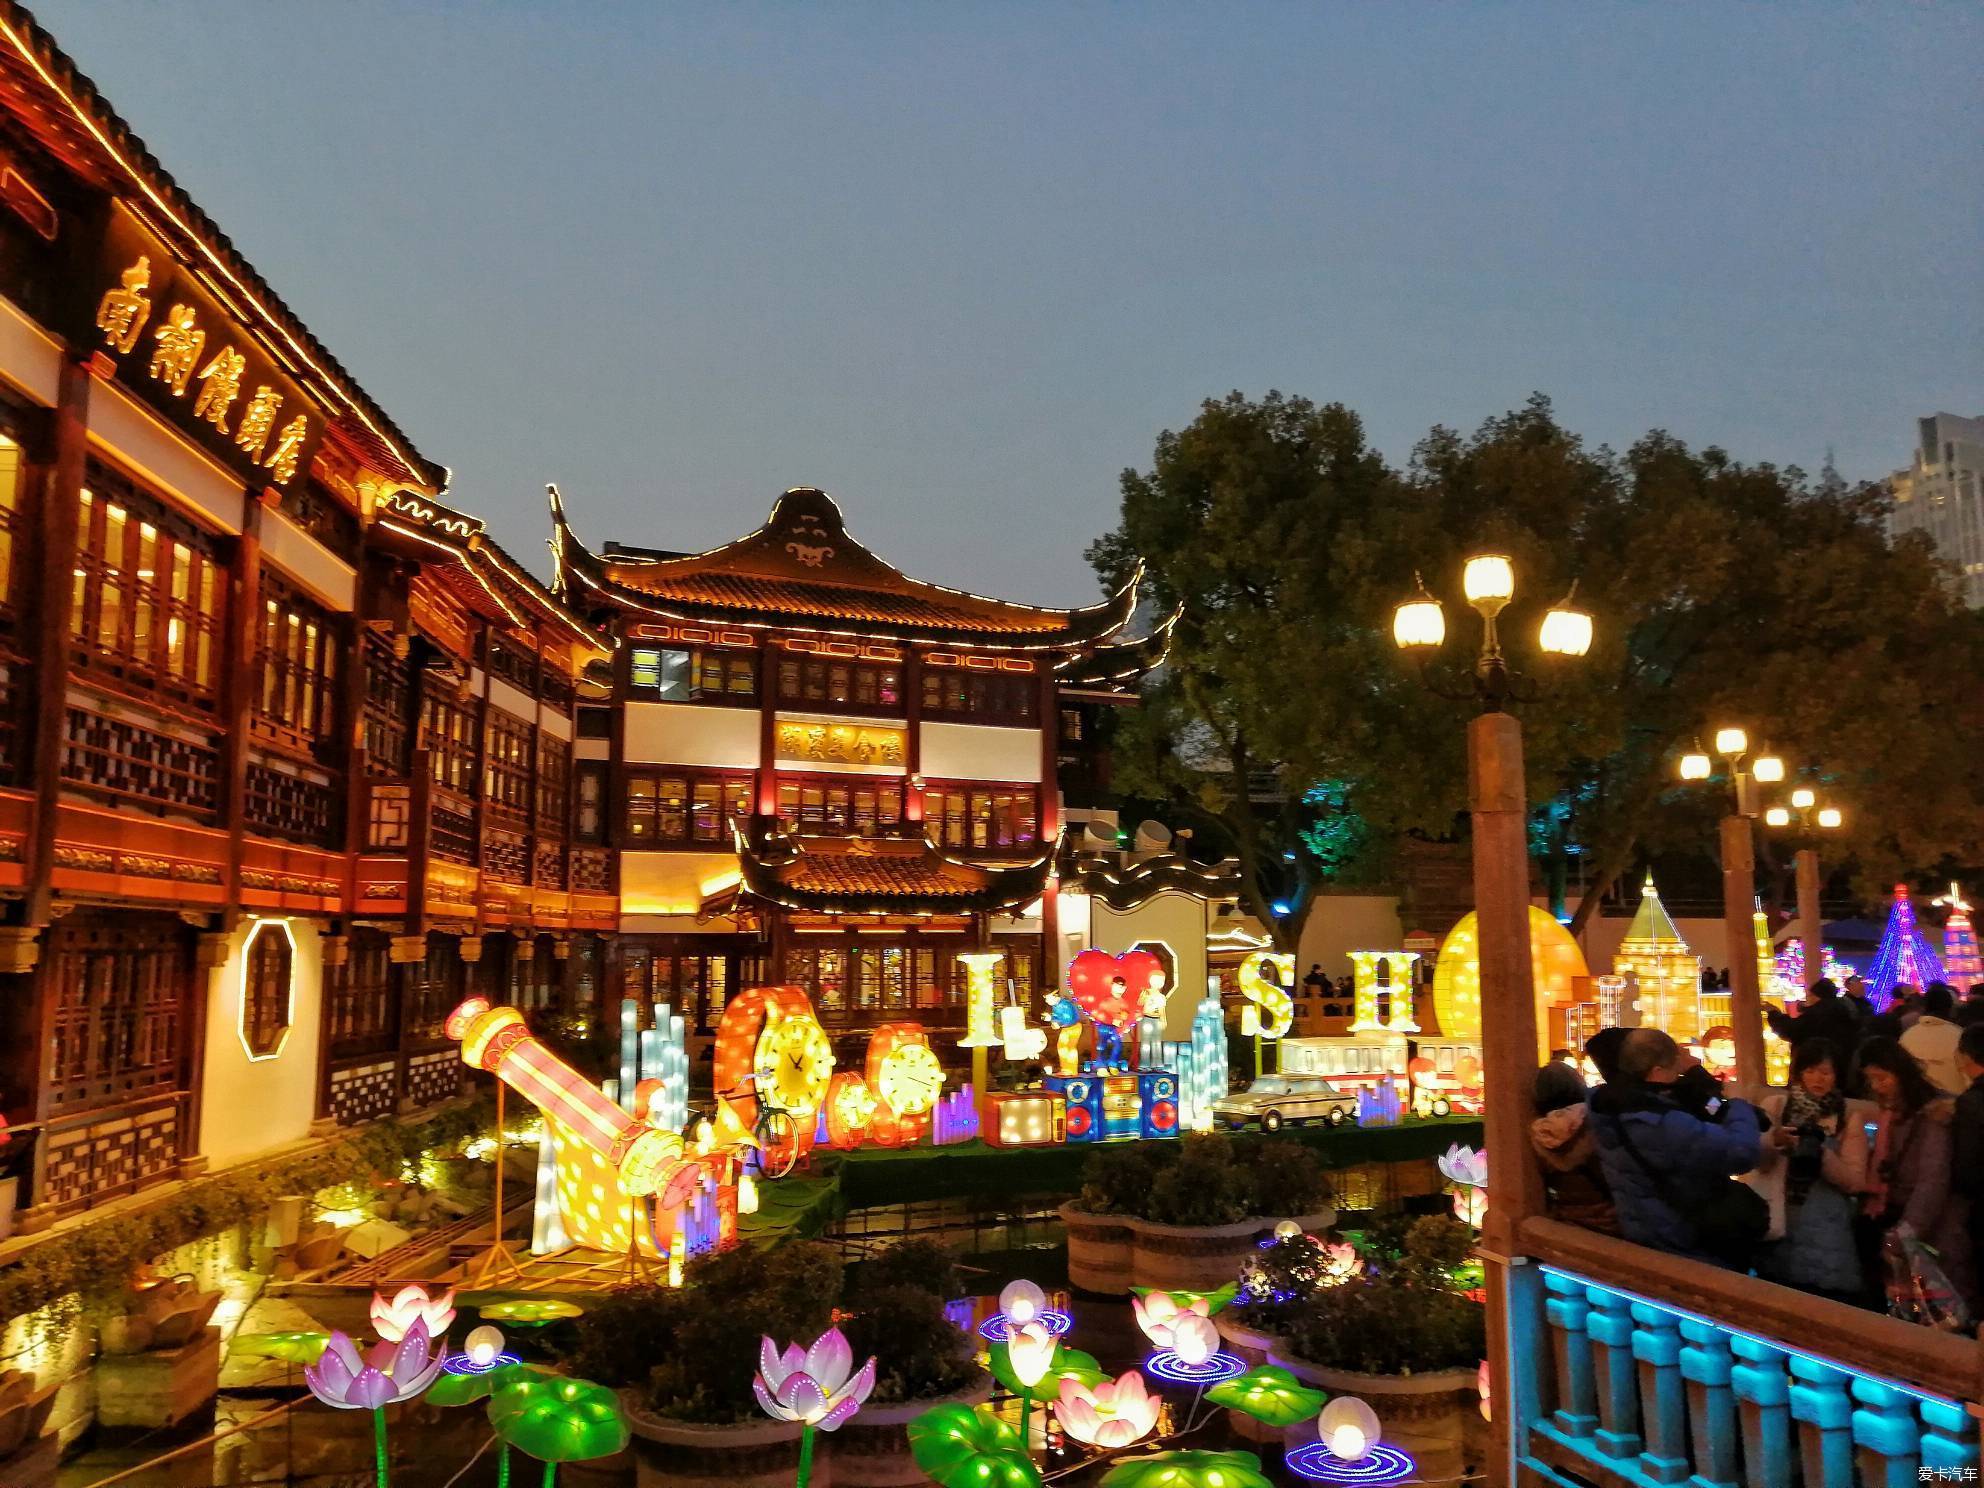 18回忆南翔小笼馒头和上海城隍庙